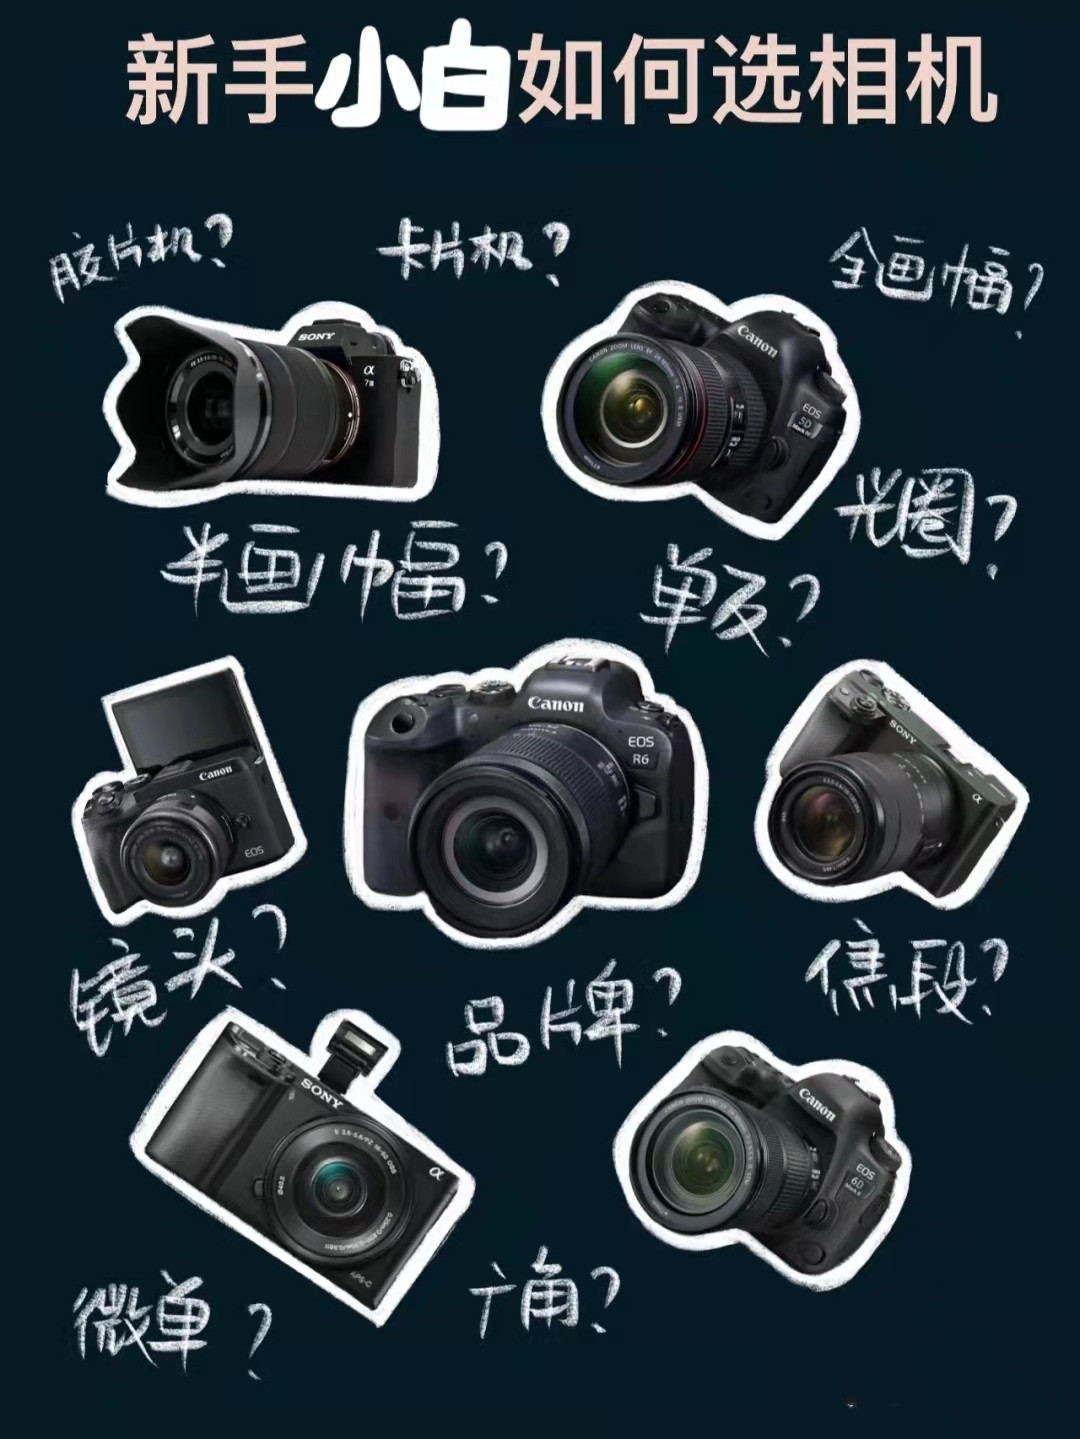 【海淘攻略】日本海淘：新手小白如何选相机？